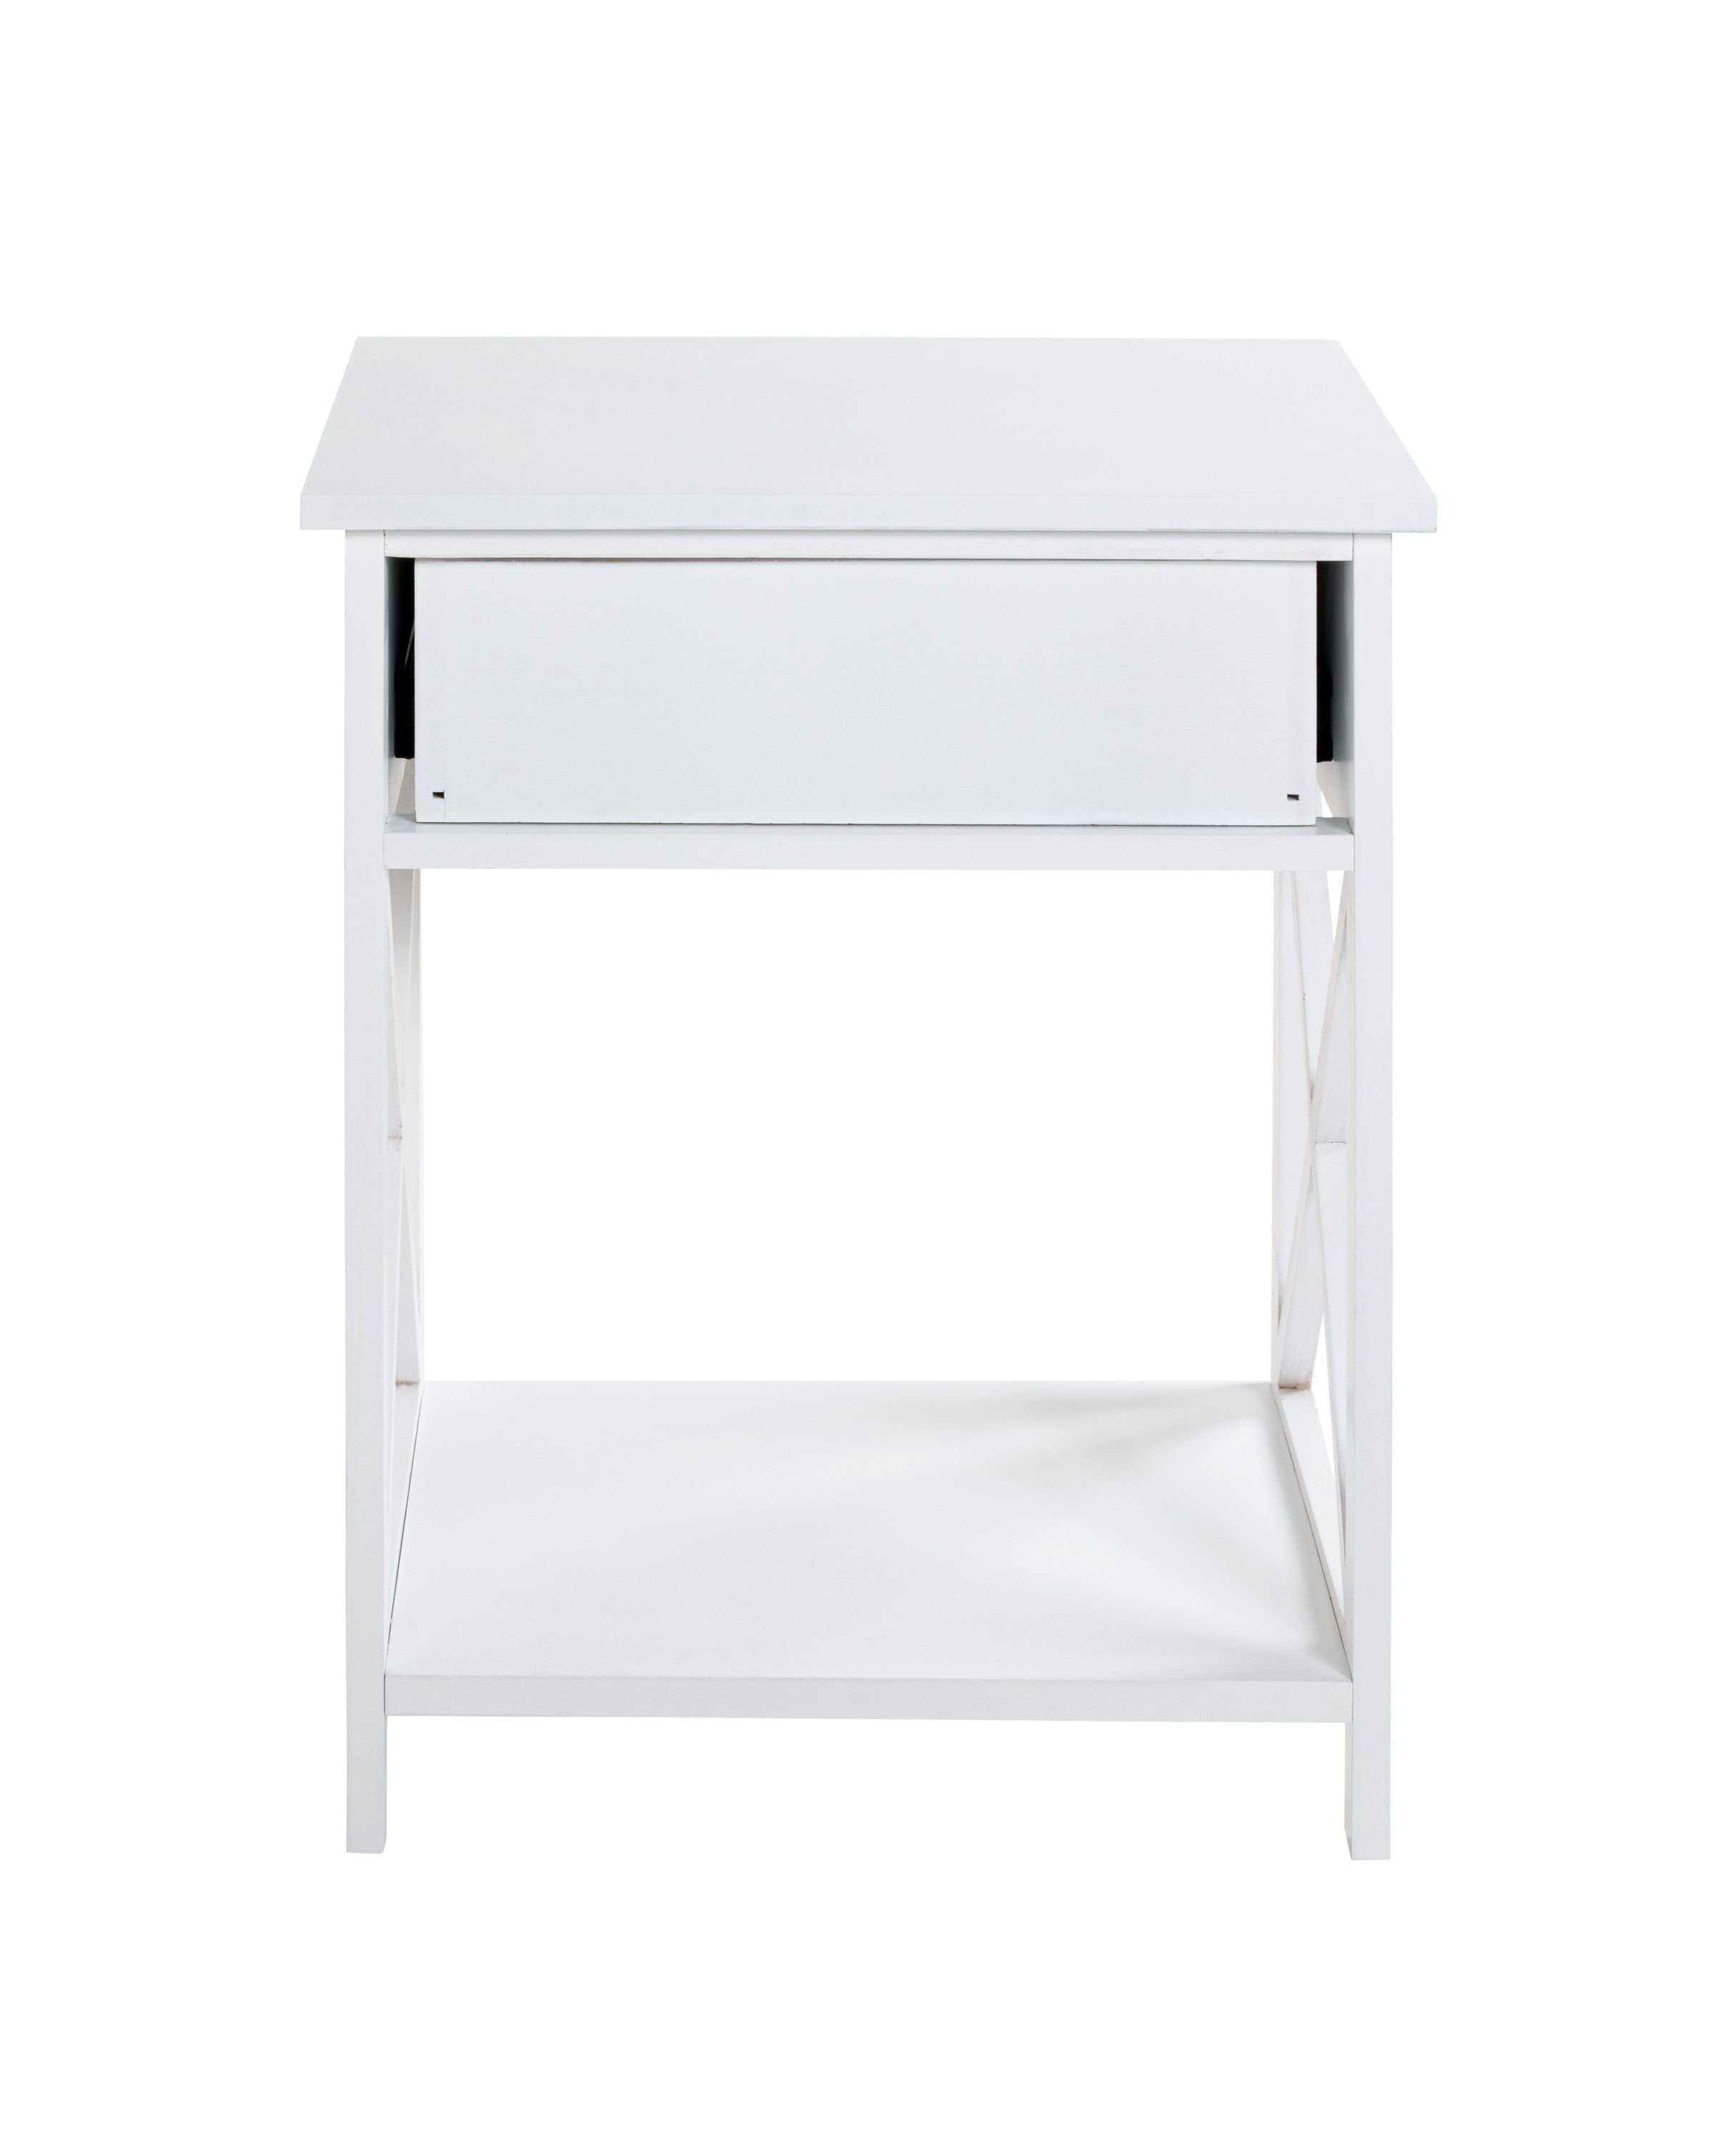 HAKU Beistelltisch Beistelltisch, HAKU Möbel 46x60x35 weiß cm) 46x60x35 BHT (BHT Beistelltisch cm